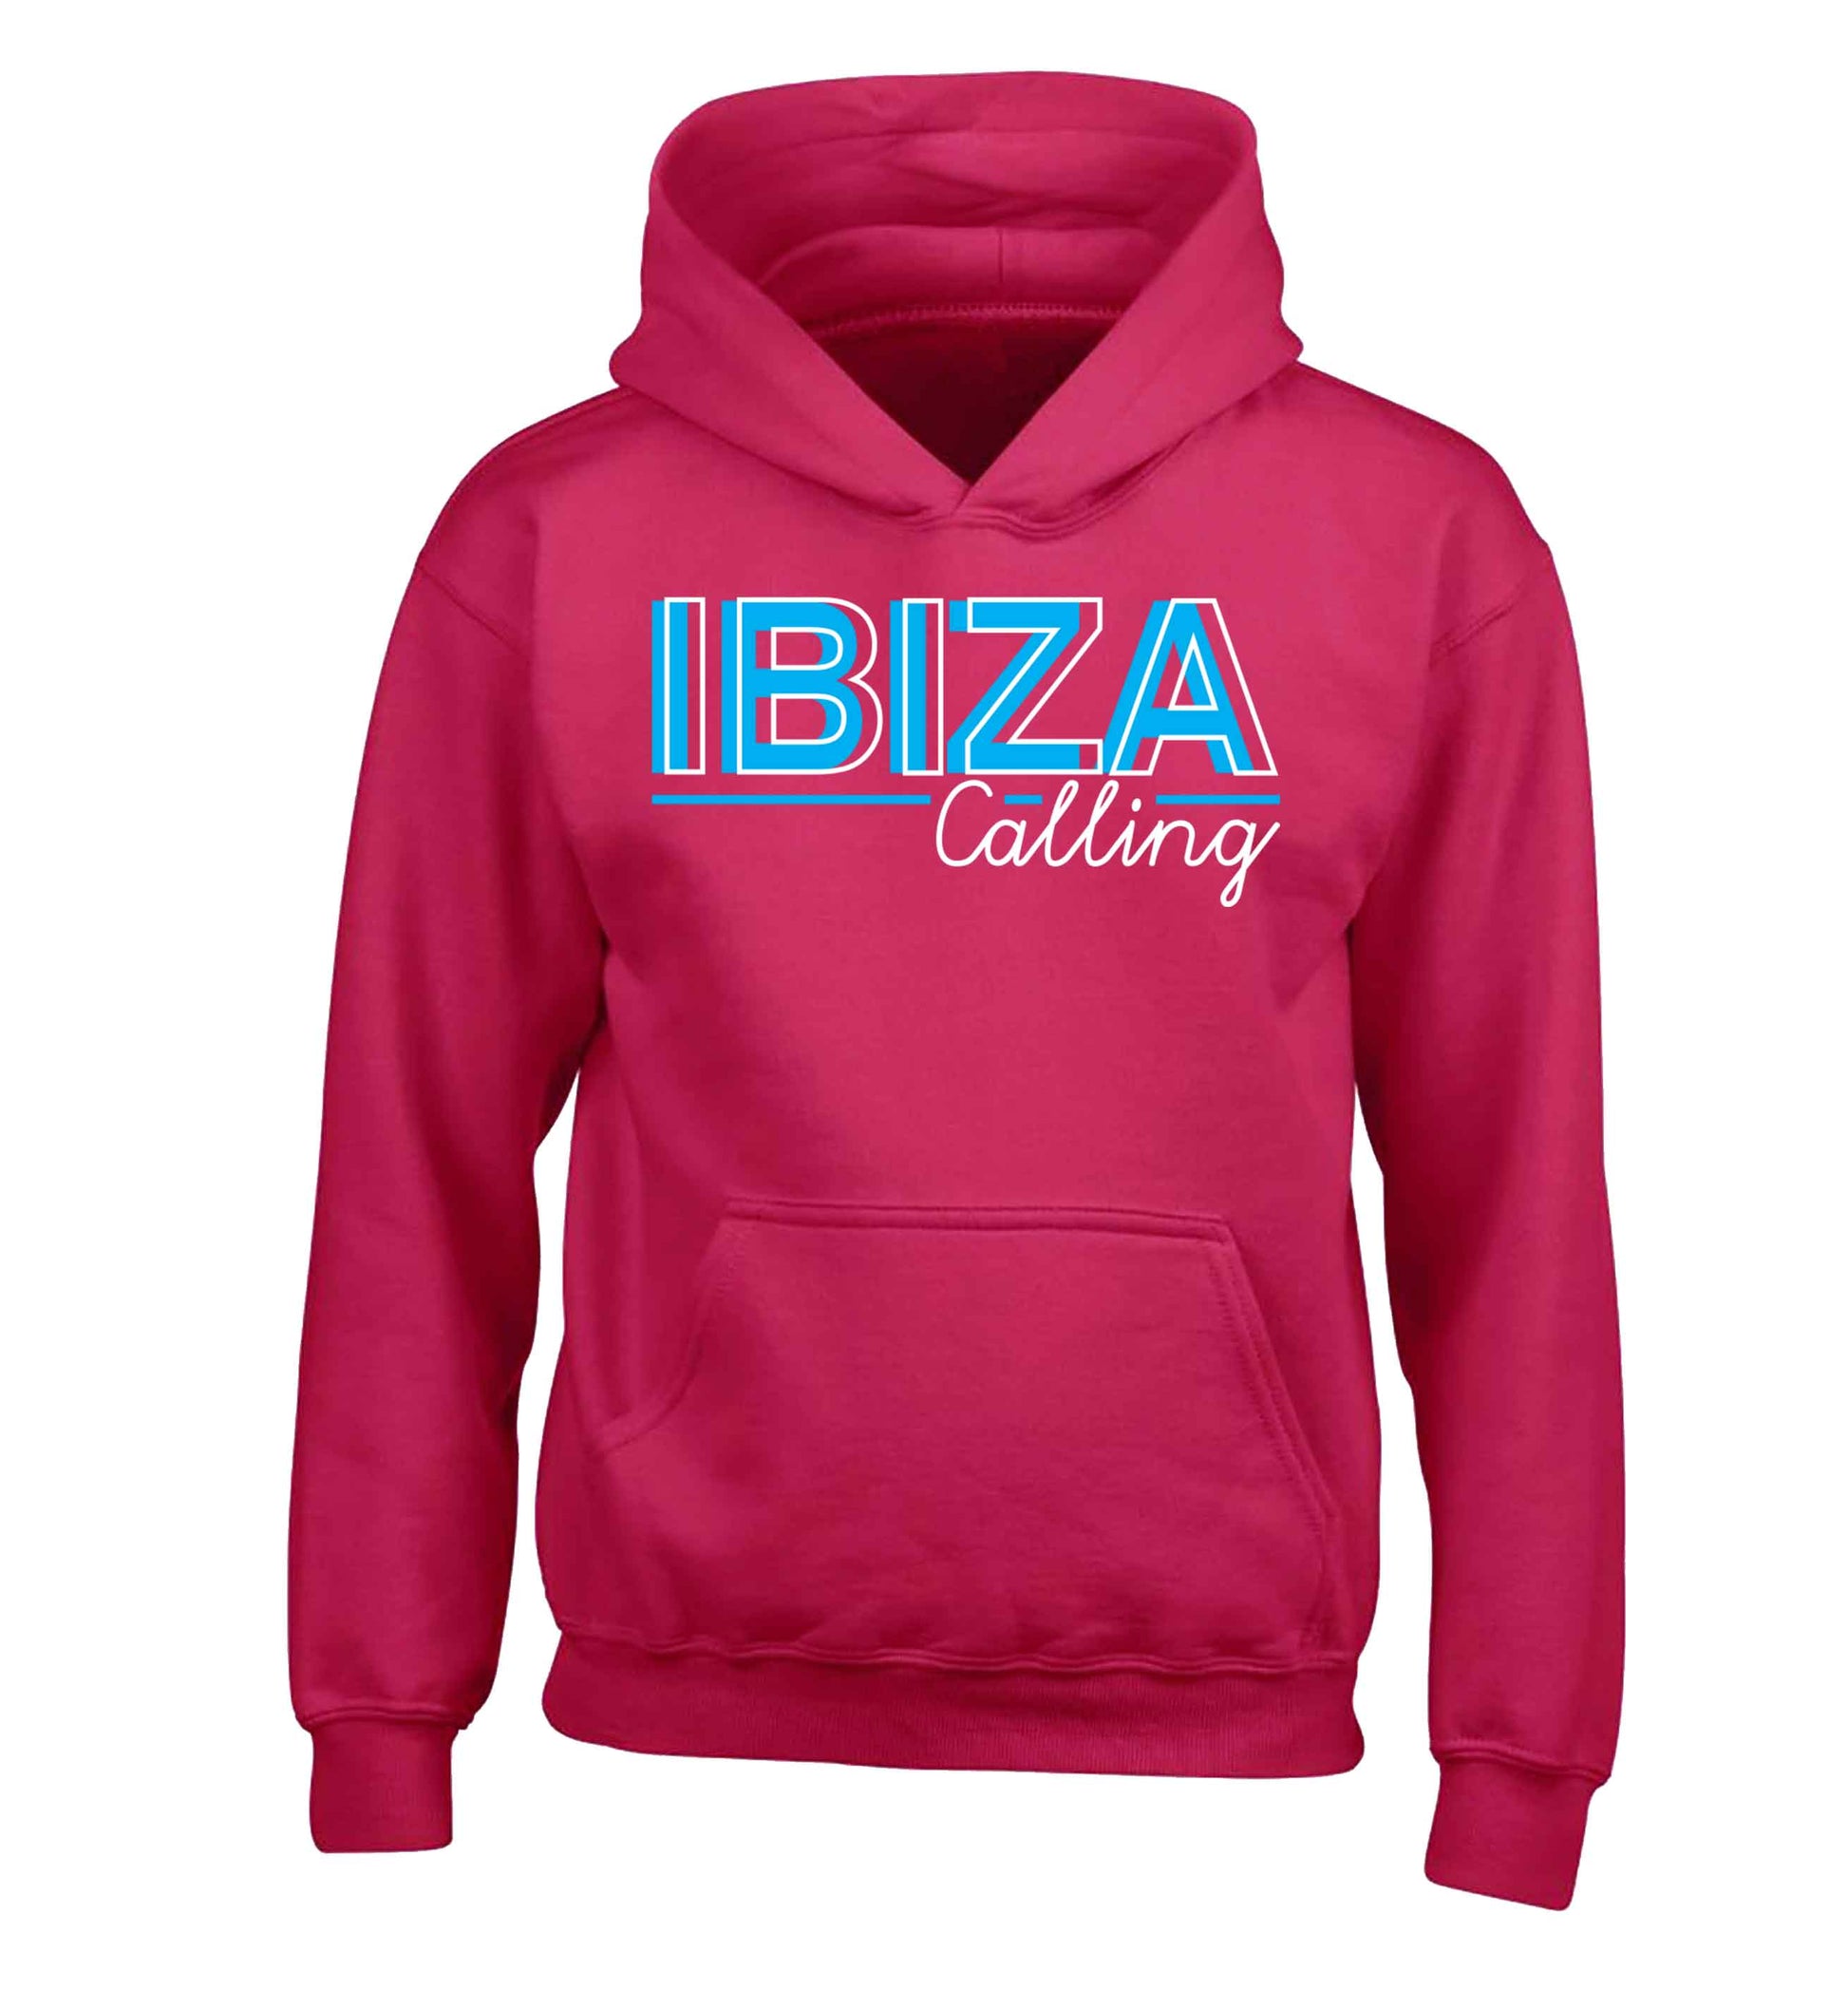 Ibiza calling children's pink hoodie 12-13 Years